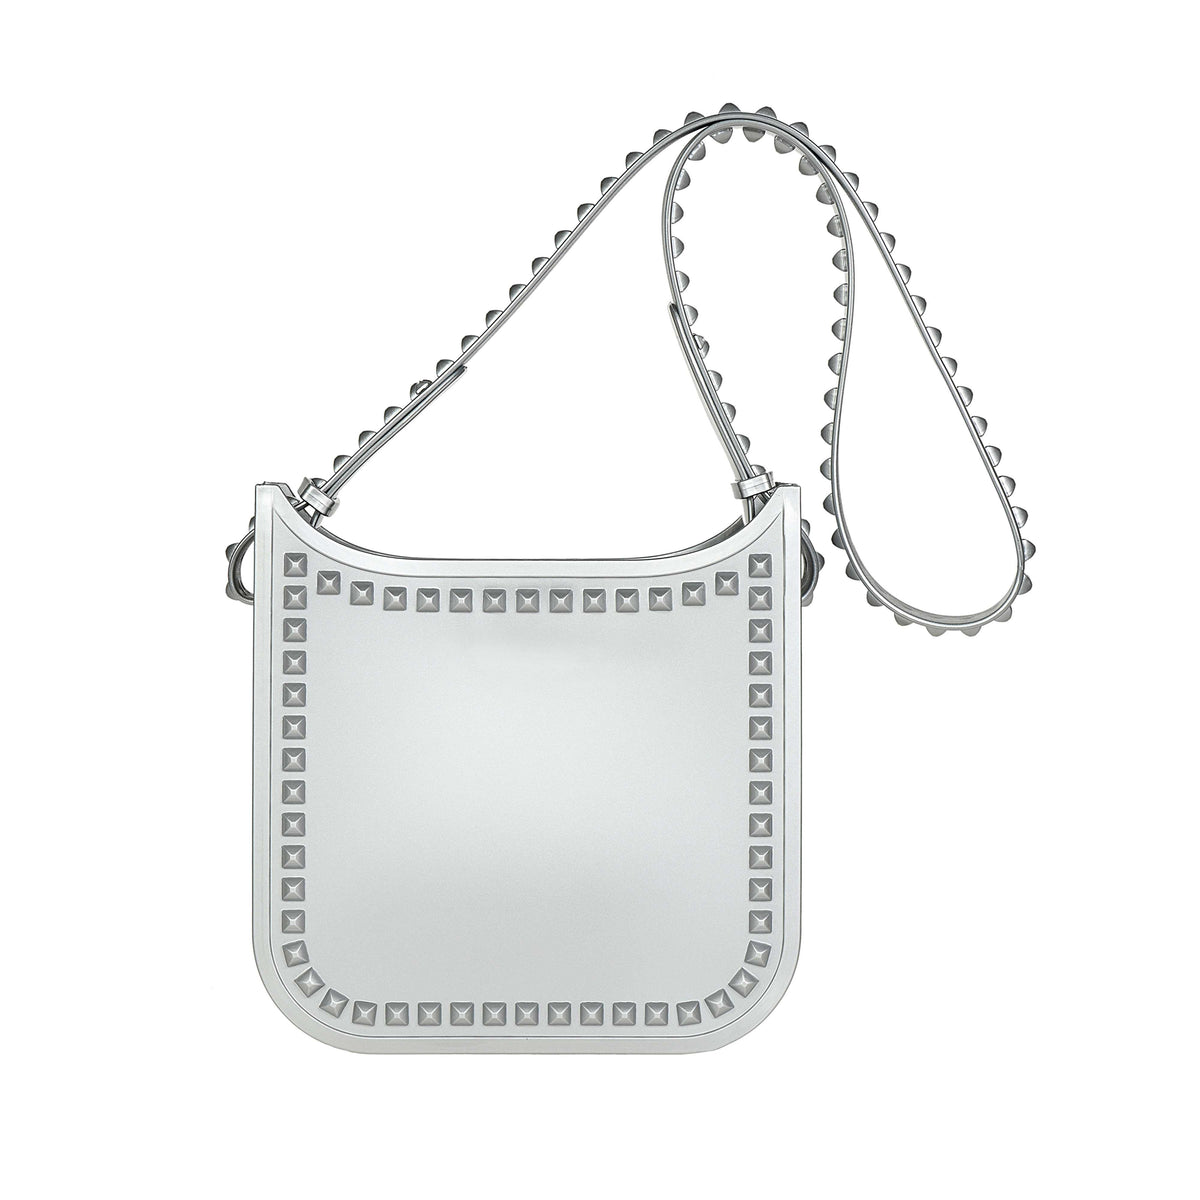 Handsfree Carmen Sol beach purse in color silver